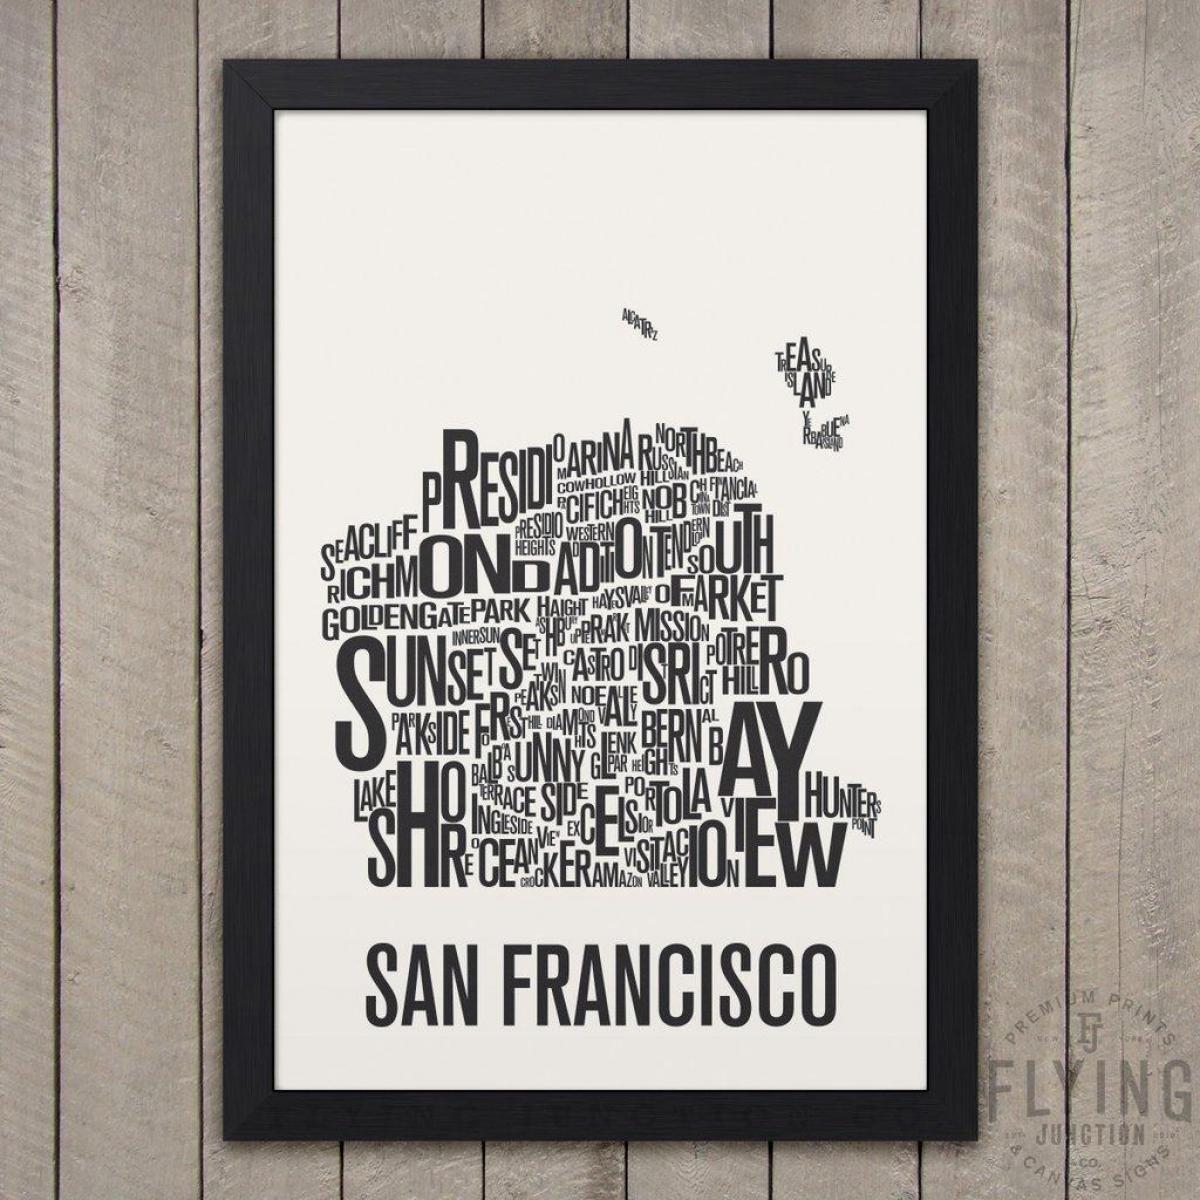 San Francisco სტამბა რუკა